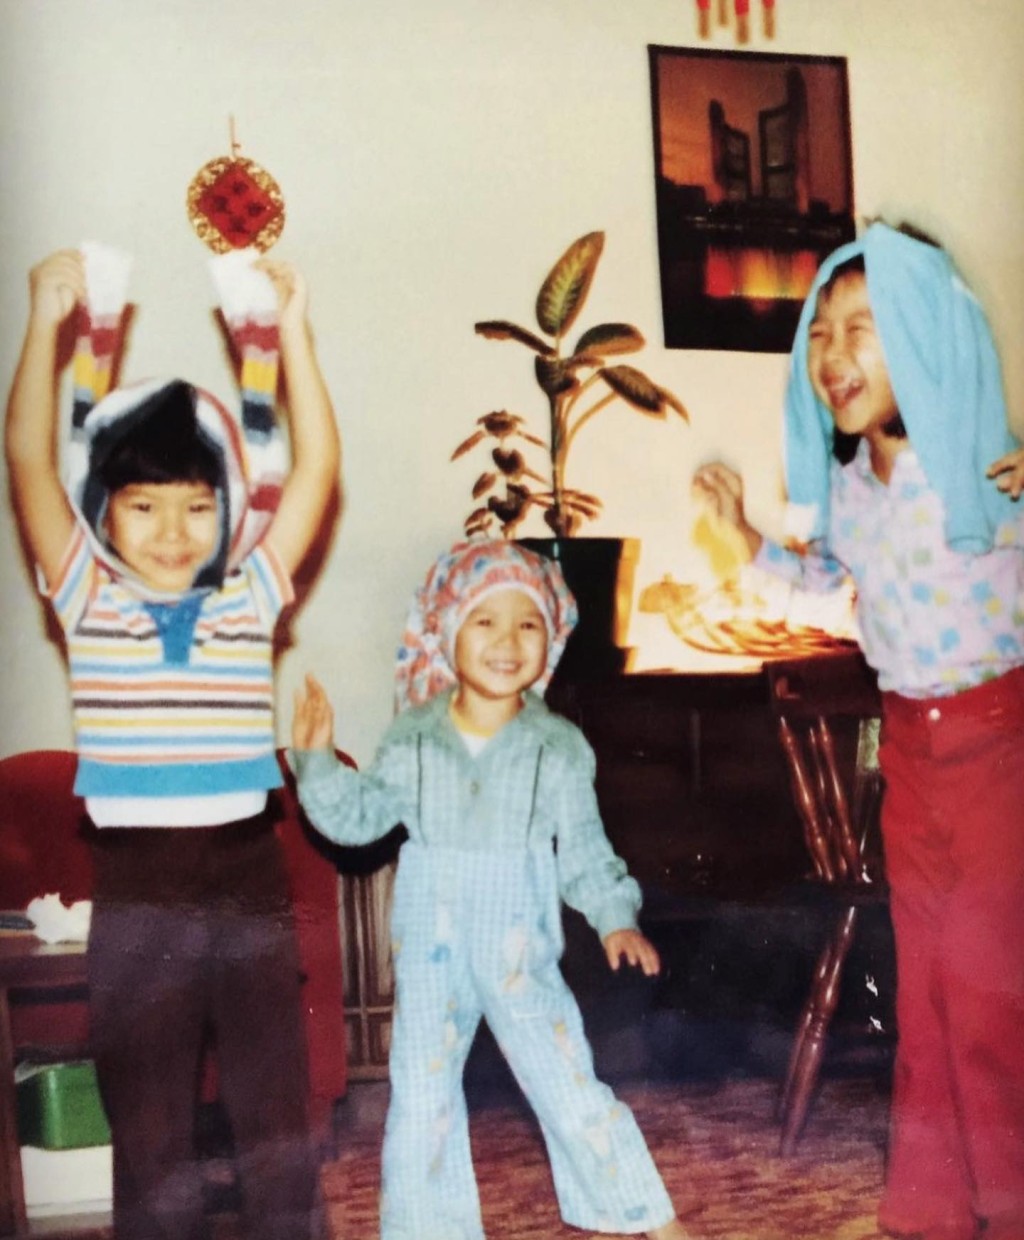 鍾麗淇分享與哥哥、家姐的童年相。